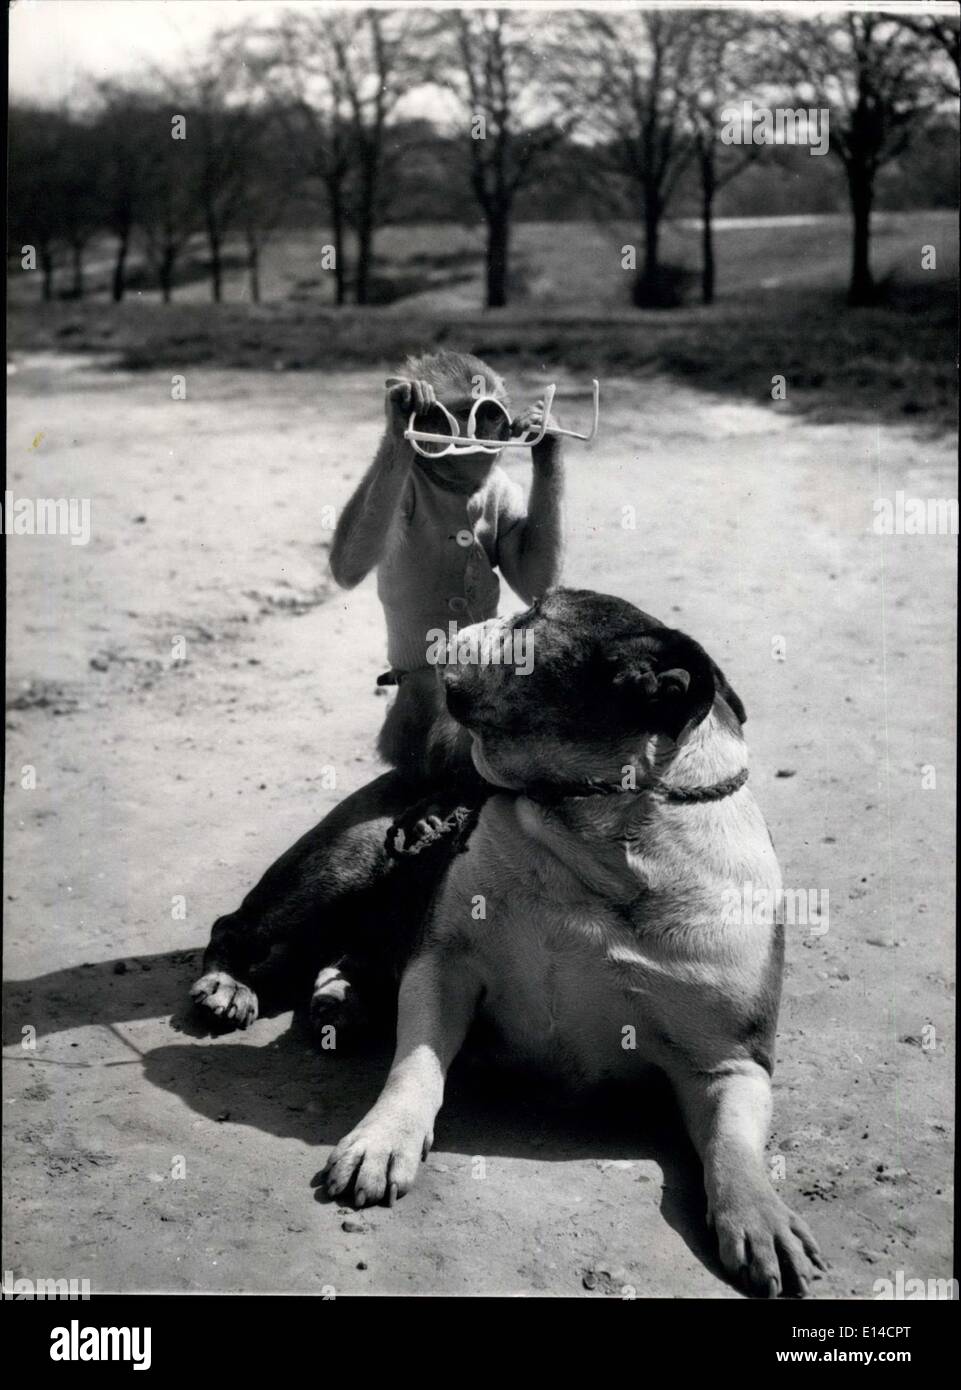 Gehen Sie 17. April 2012 - mit Ihnen auf. Sie sind verkehrt herum: Rocky die Bulldog, spielt gerne mit seinen Pal-Jenny, die Rhesus-Affen auf Hampstead Heath, in der Nähe ihrer Heimat. Ein paar Sonnenbrille hält sie für eine lange Zeit amüsiert. Stockfoto